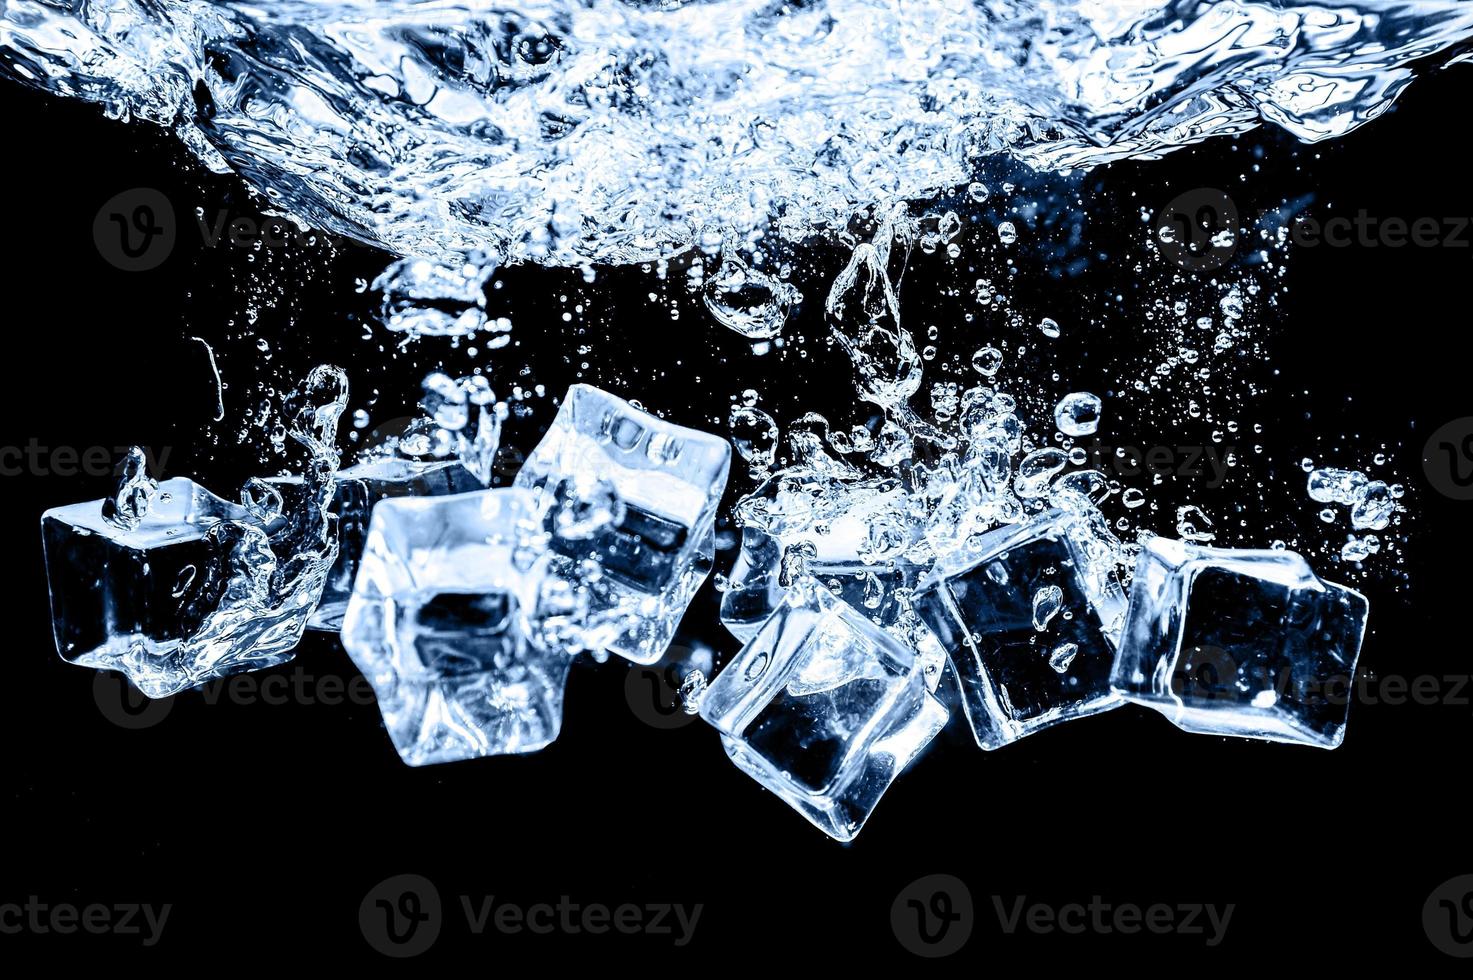 ijsblokjes in water op studio donkere achtergrond. het concept van versheid met koelte van ijsblokjes. foto